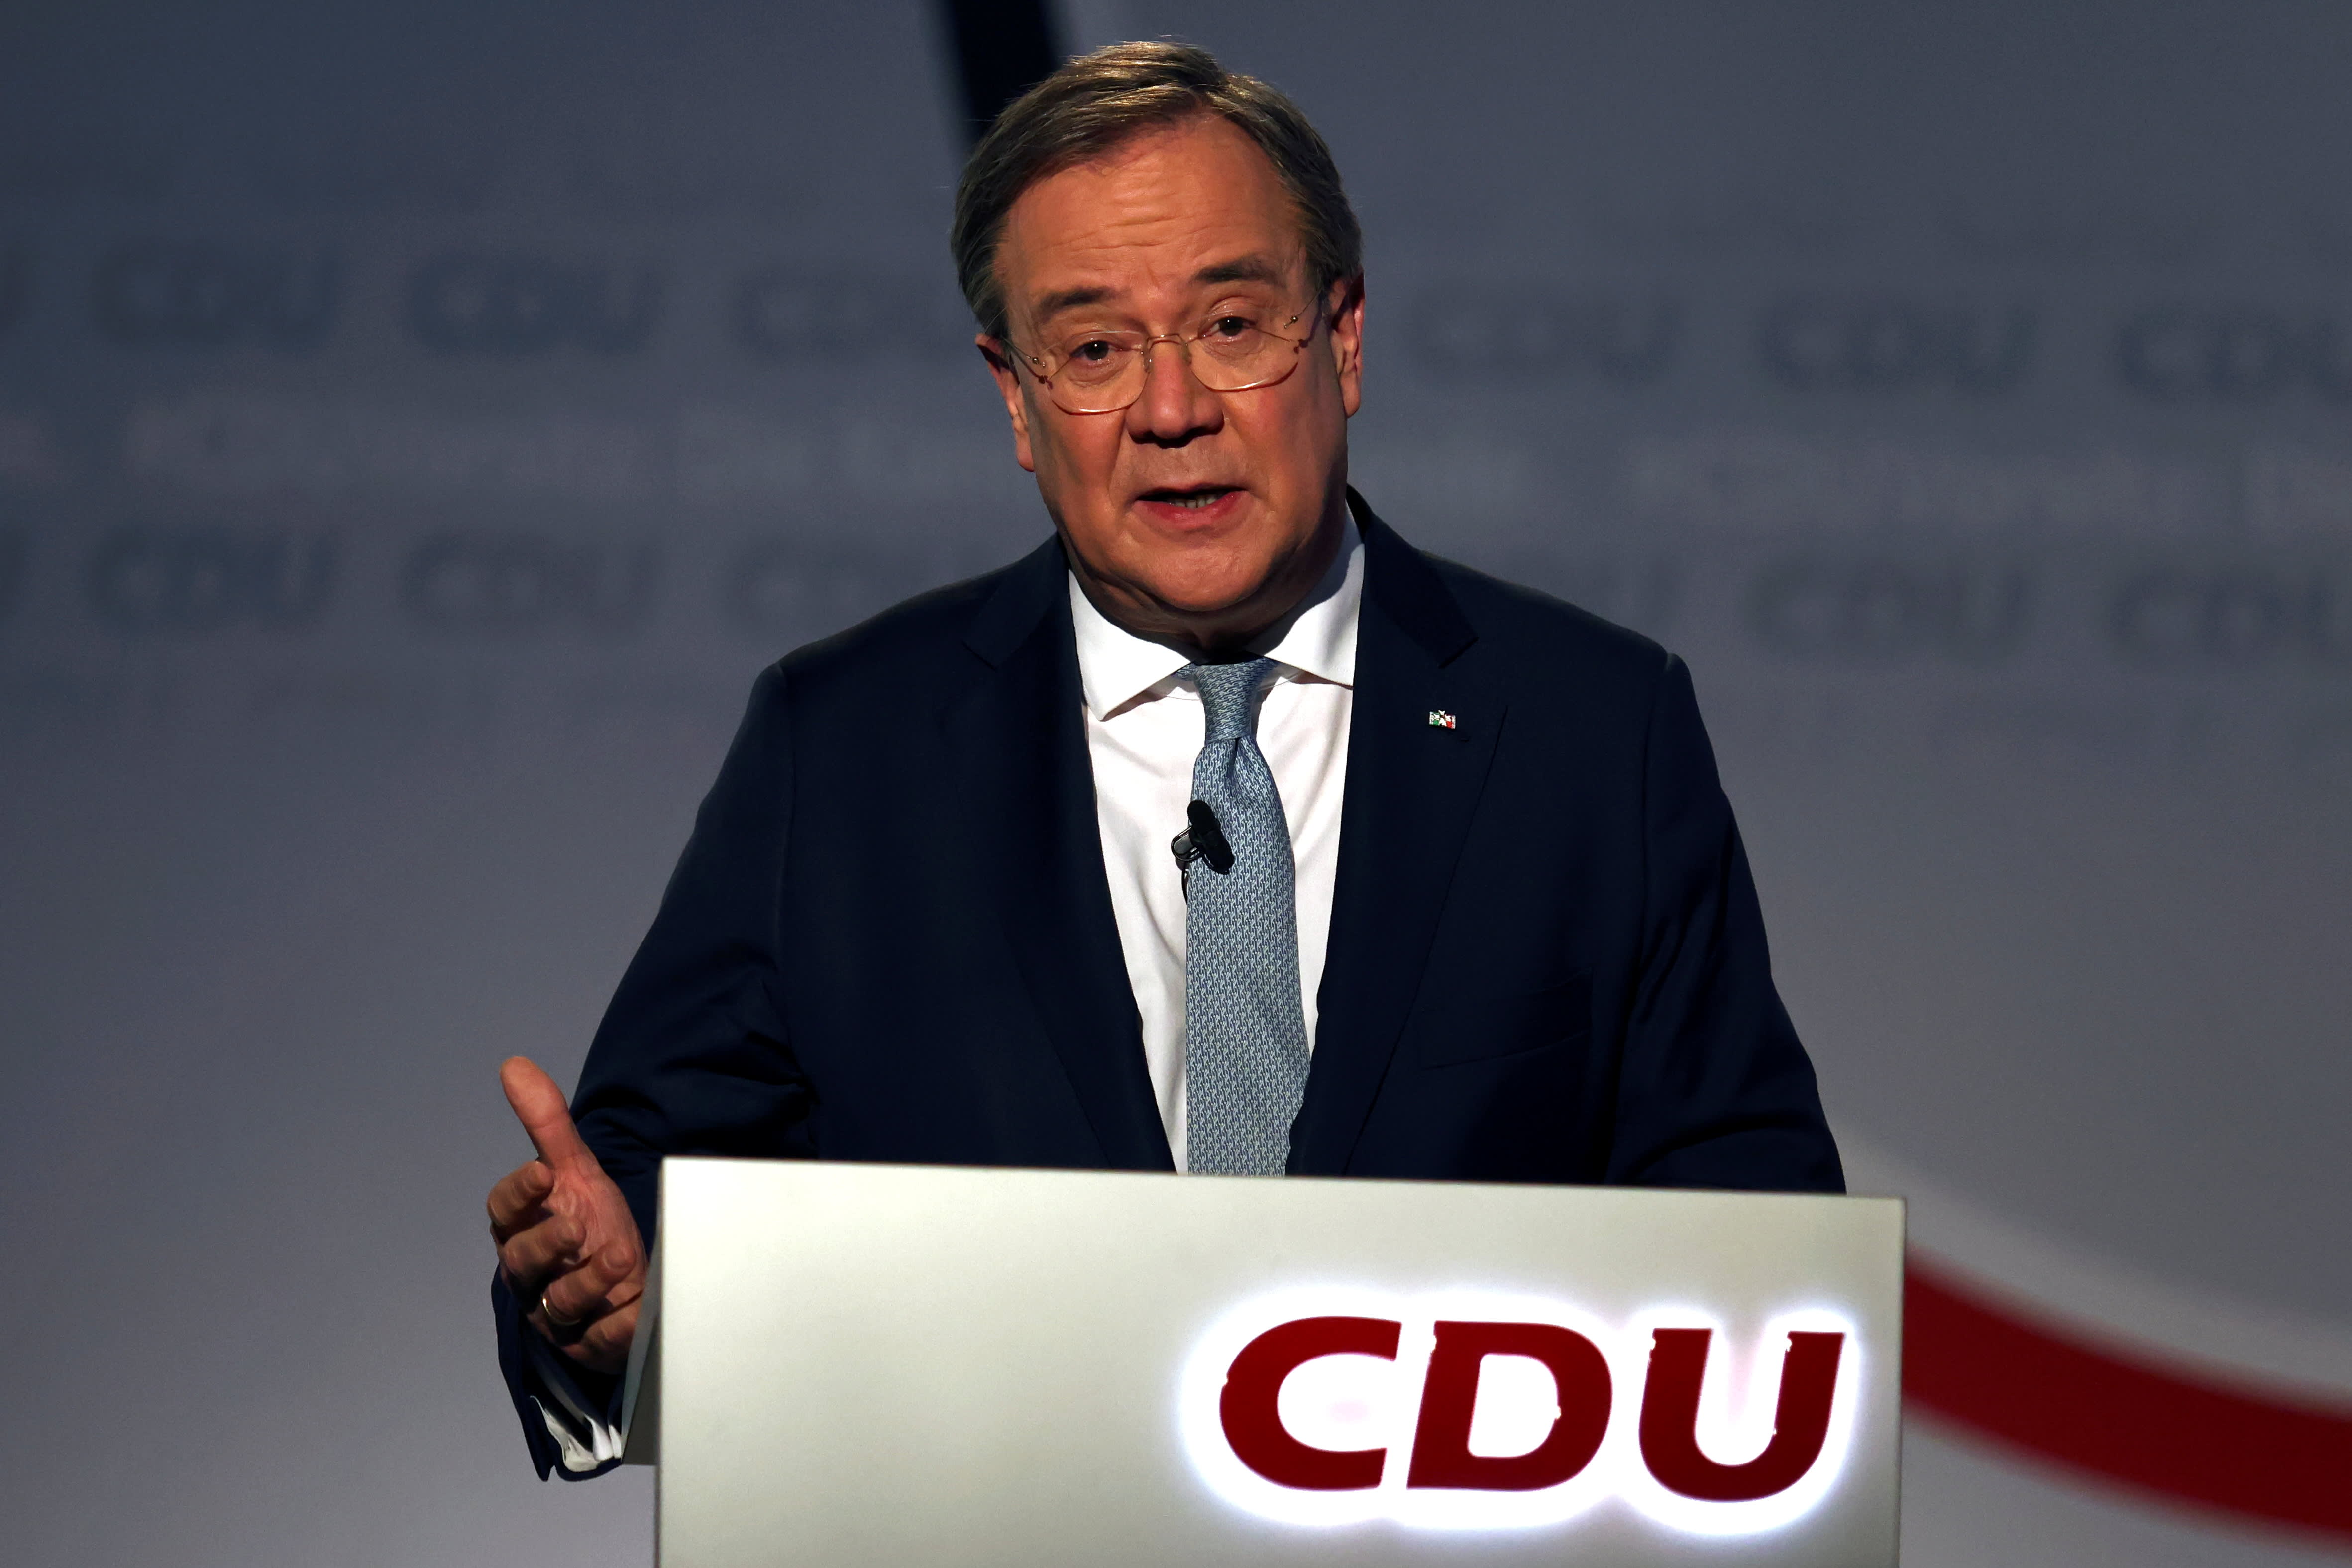 Armin Laschet a été choisi comme nouveau chef de l’Union chrétienne-démocrate en Allemagne